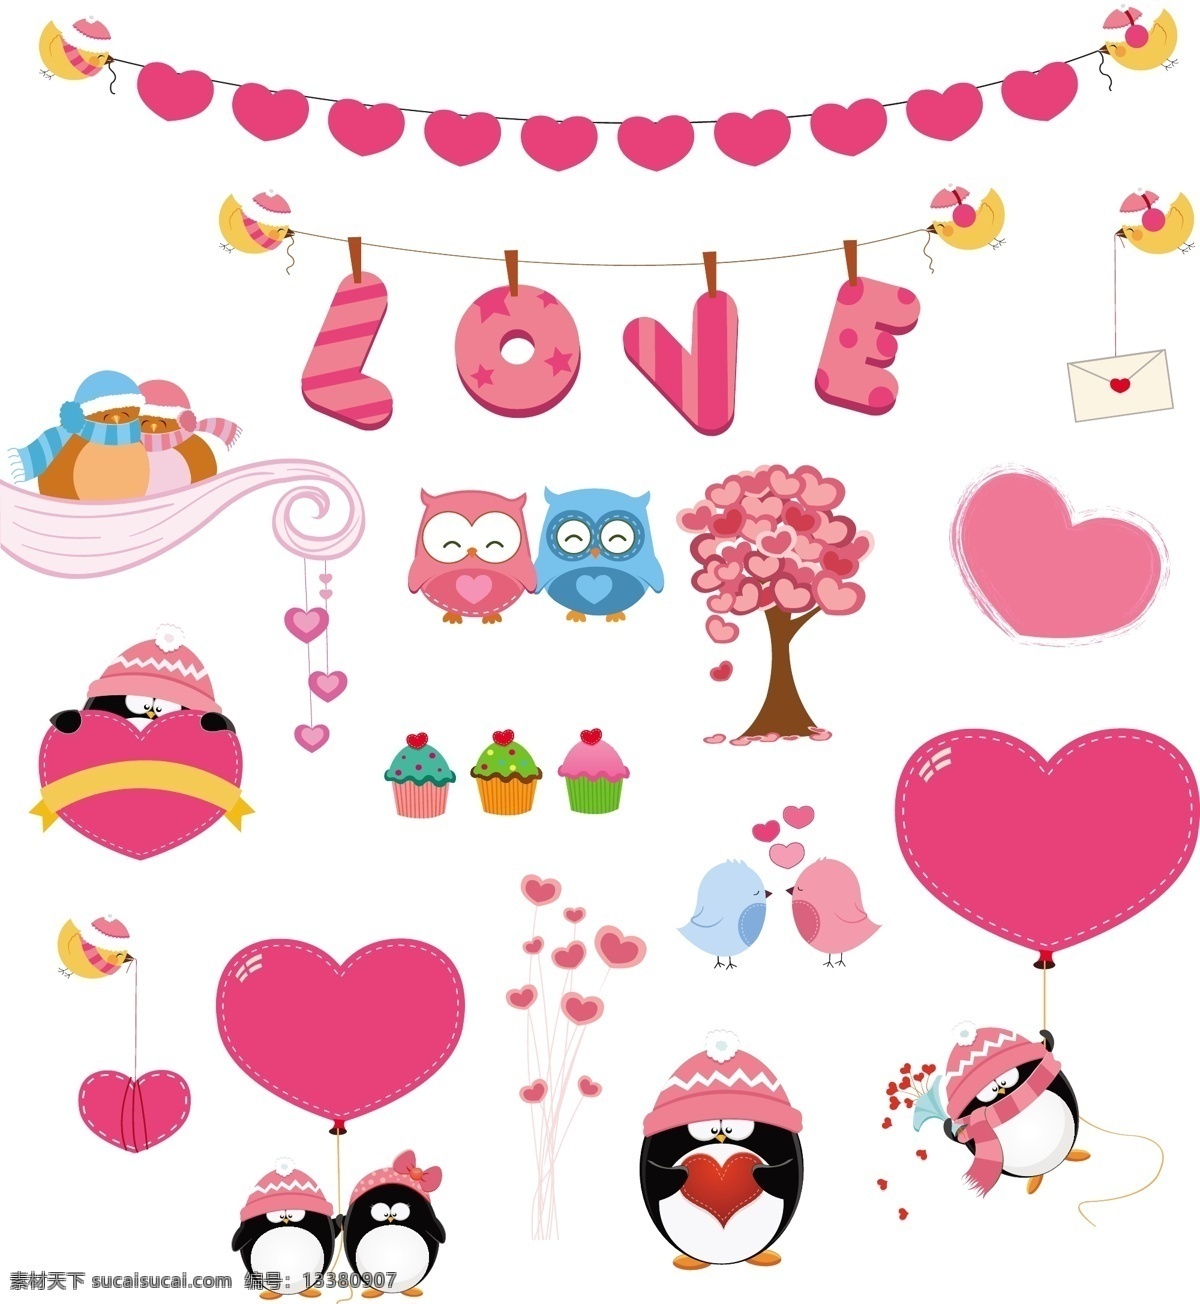 粉色 爱心 元素 矢量 鸟 冬季 爱心树 气球 情侣 猫头鹰 蛋糕 企鹅 love 情人节 矢量图